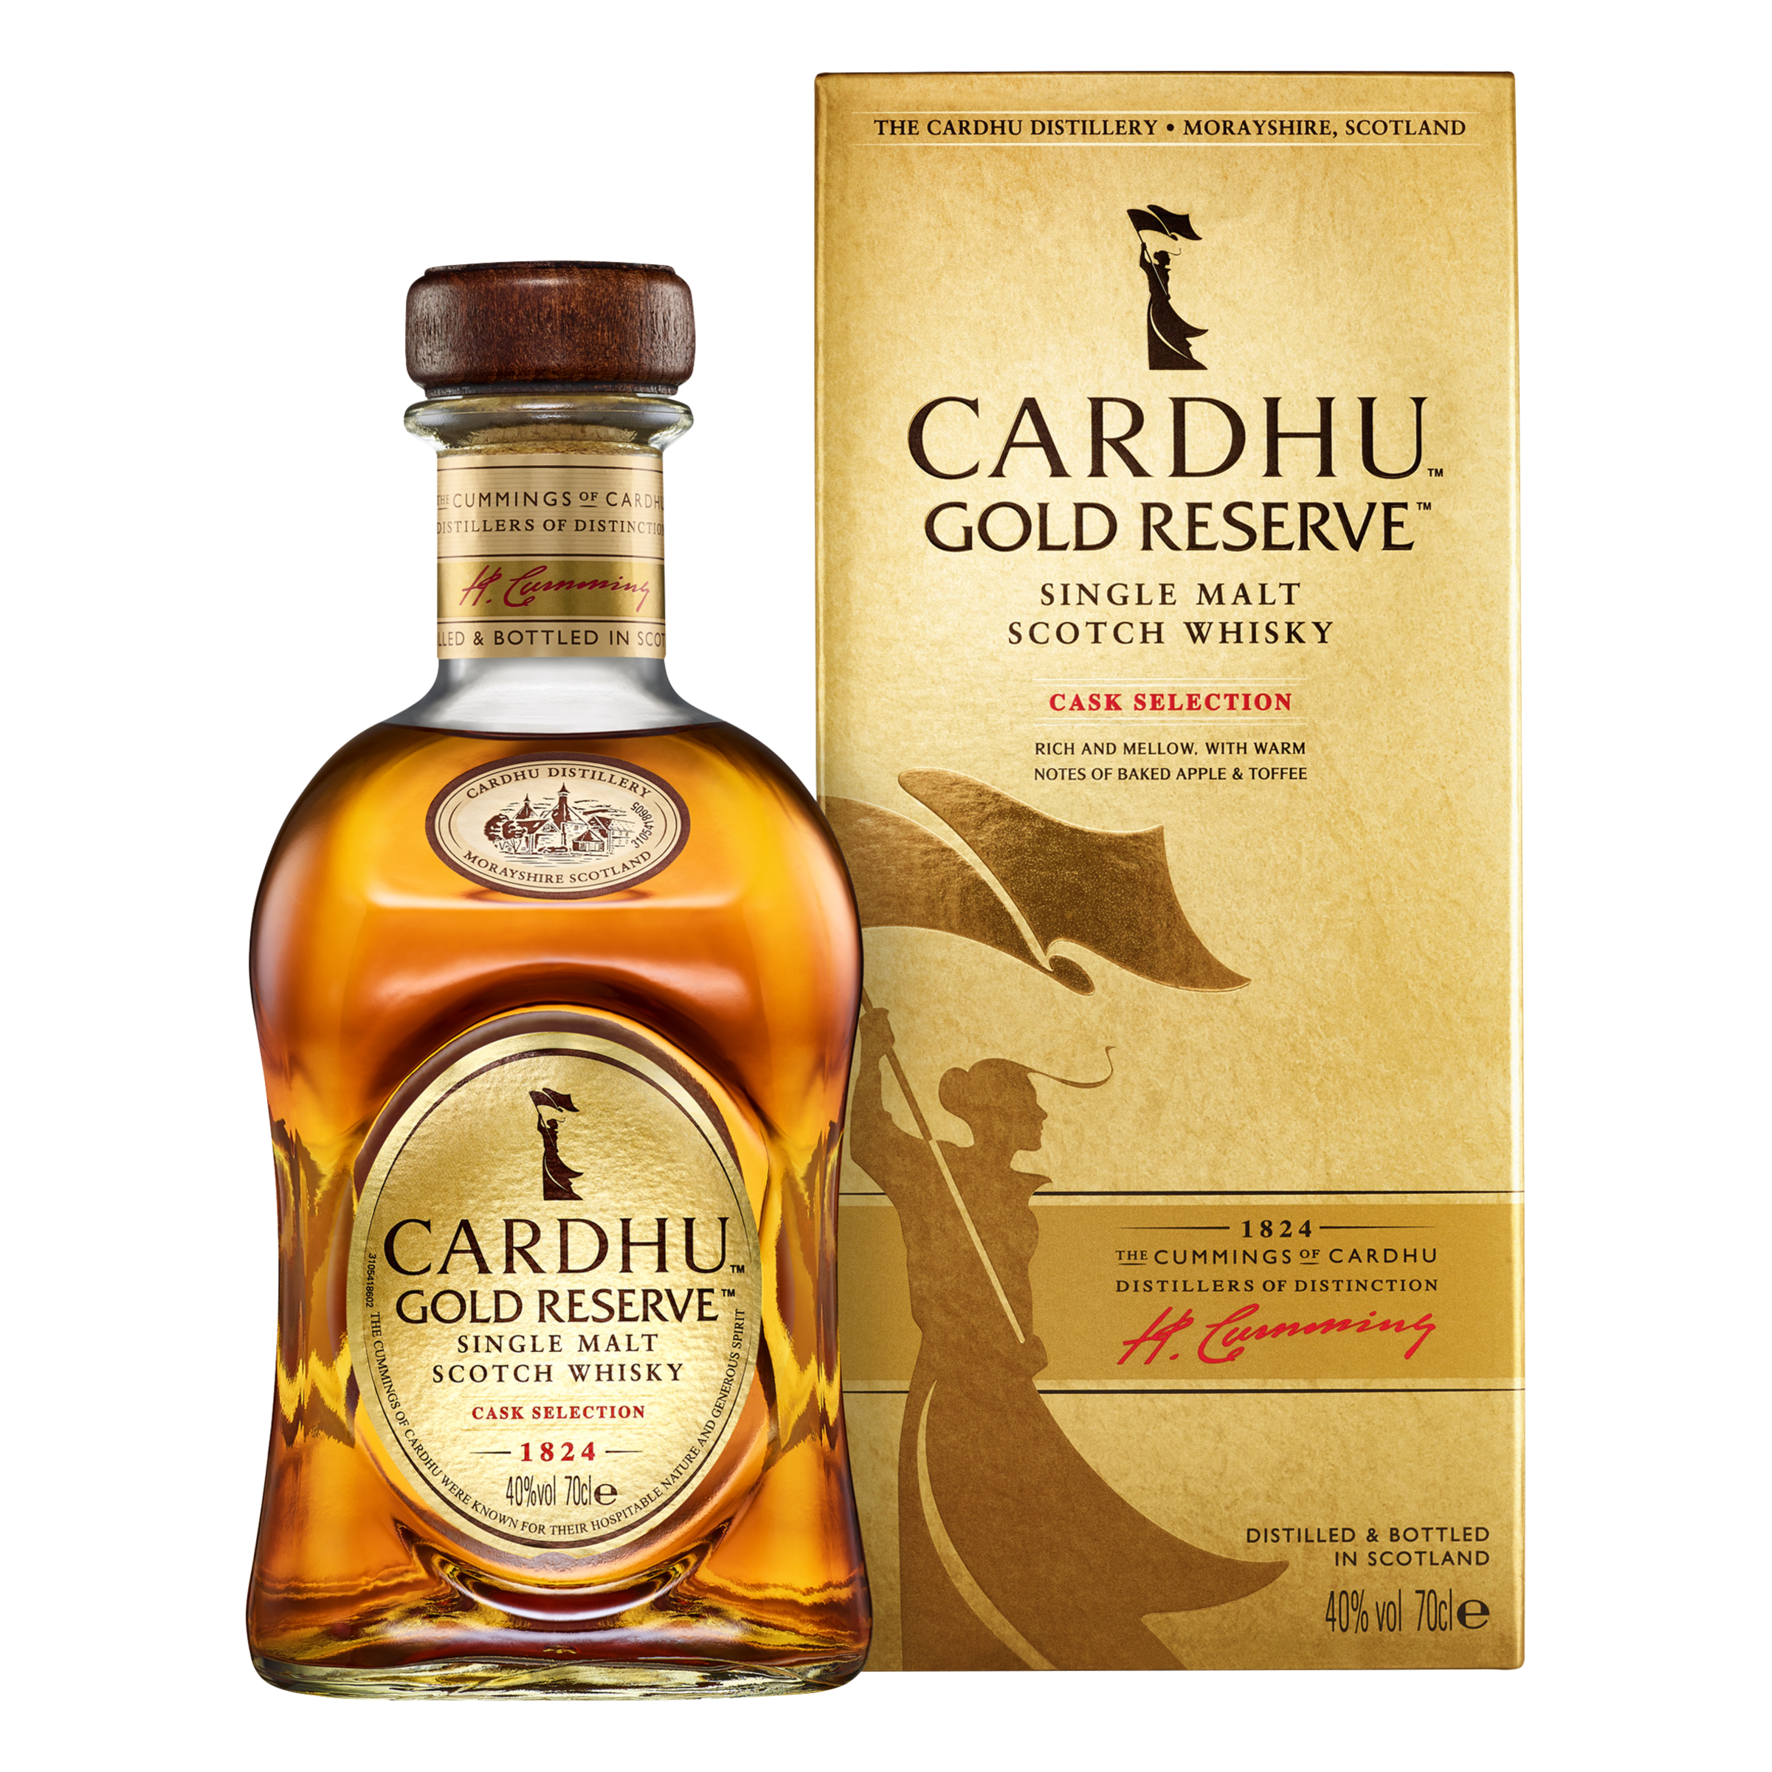 Cardhu Gold Reserve Single Malt Scotch Whisky 70 cl